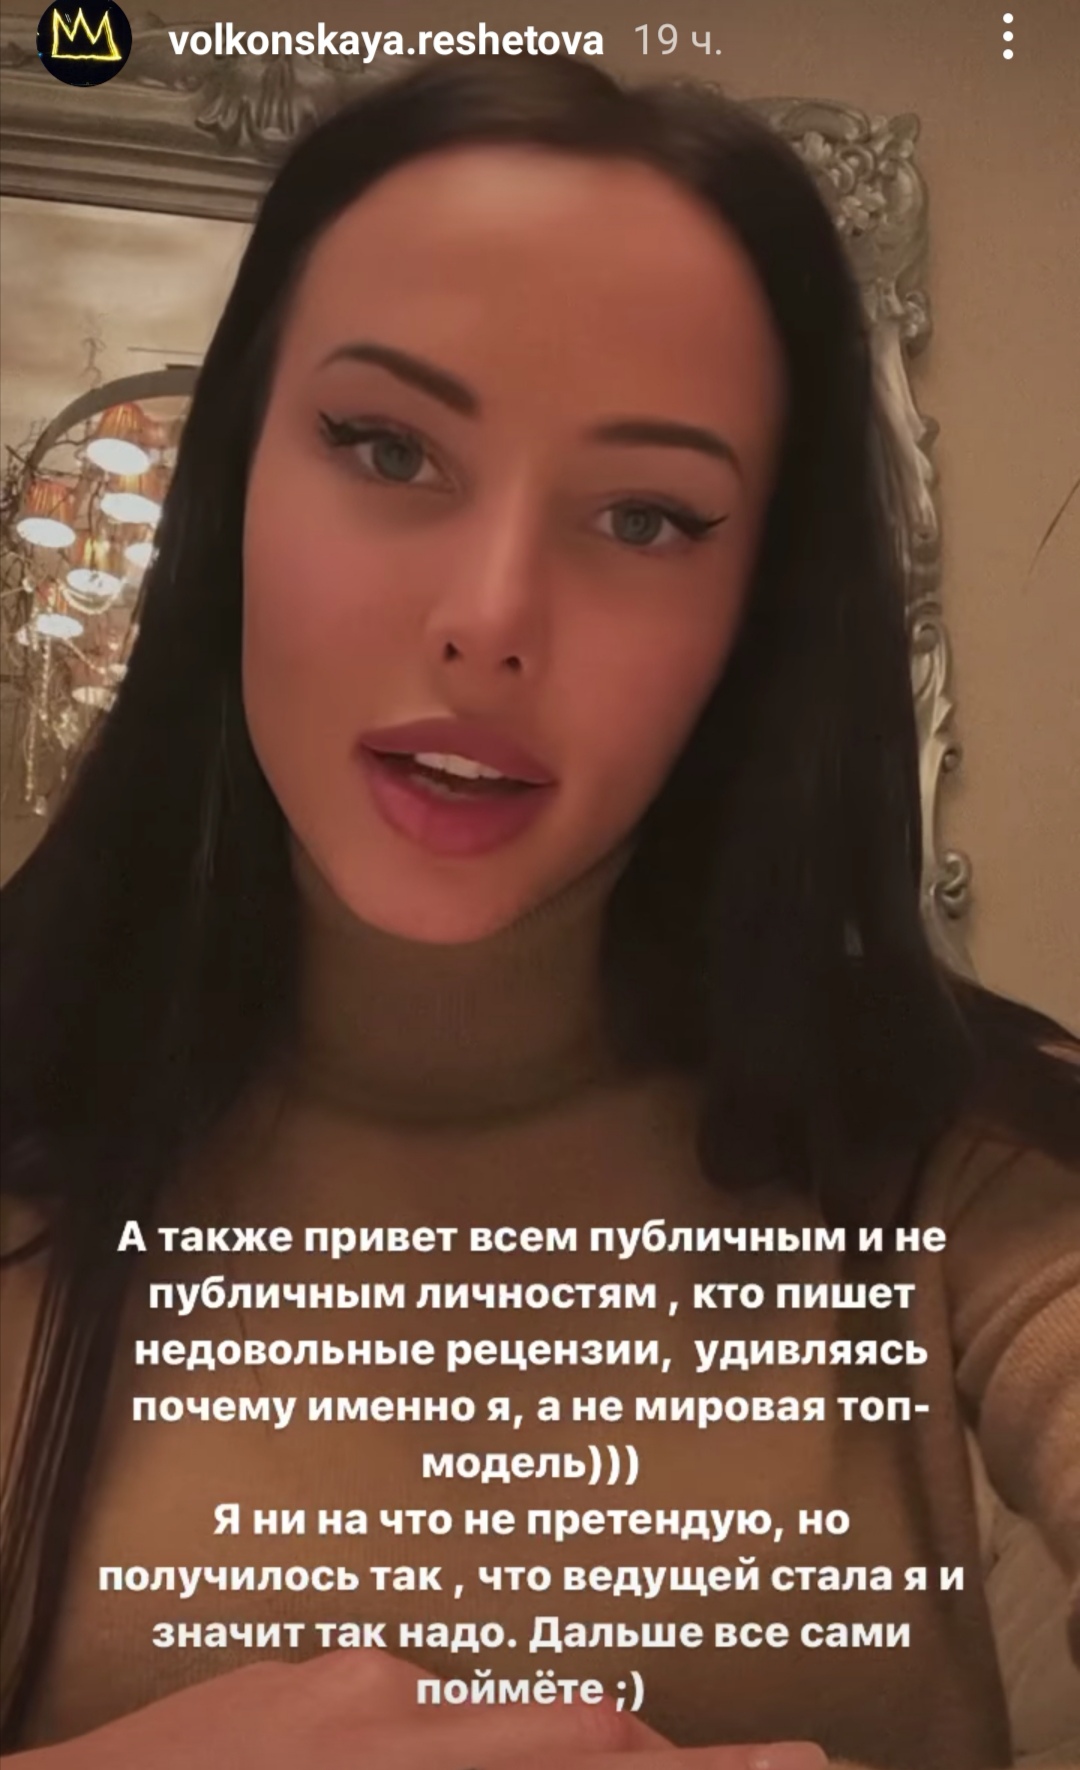 "Смотреть противно": чем зрителям не понравилось шоу "Ты-Топ-модель" с Анастасией Решетовой